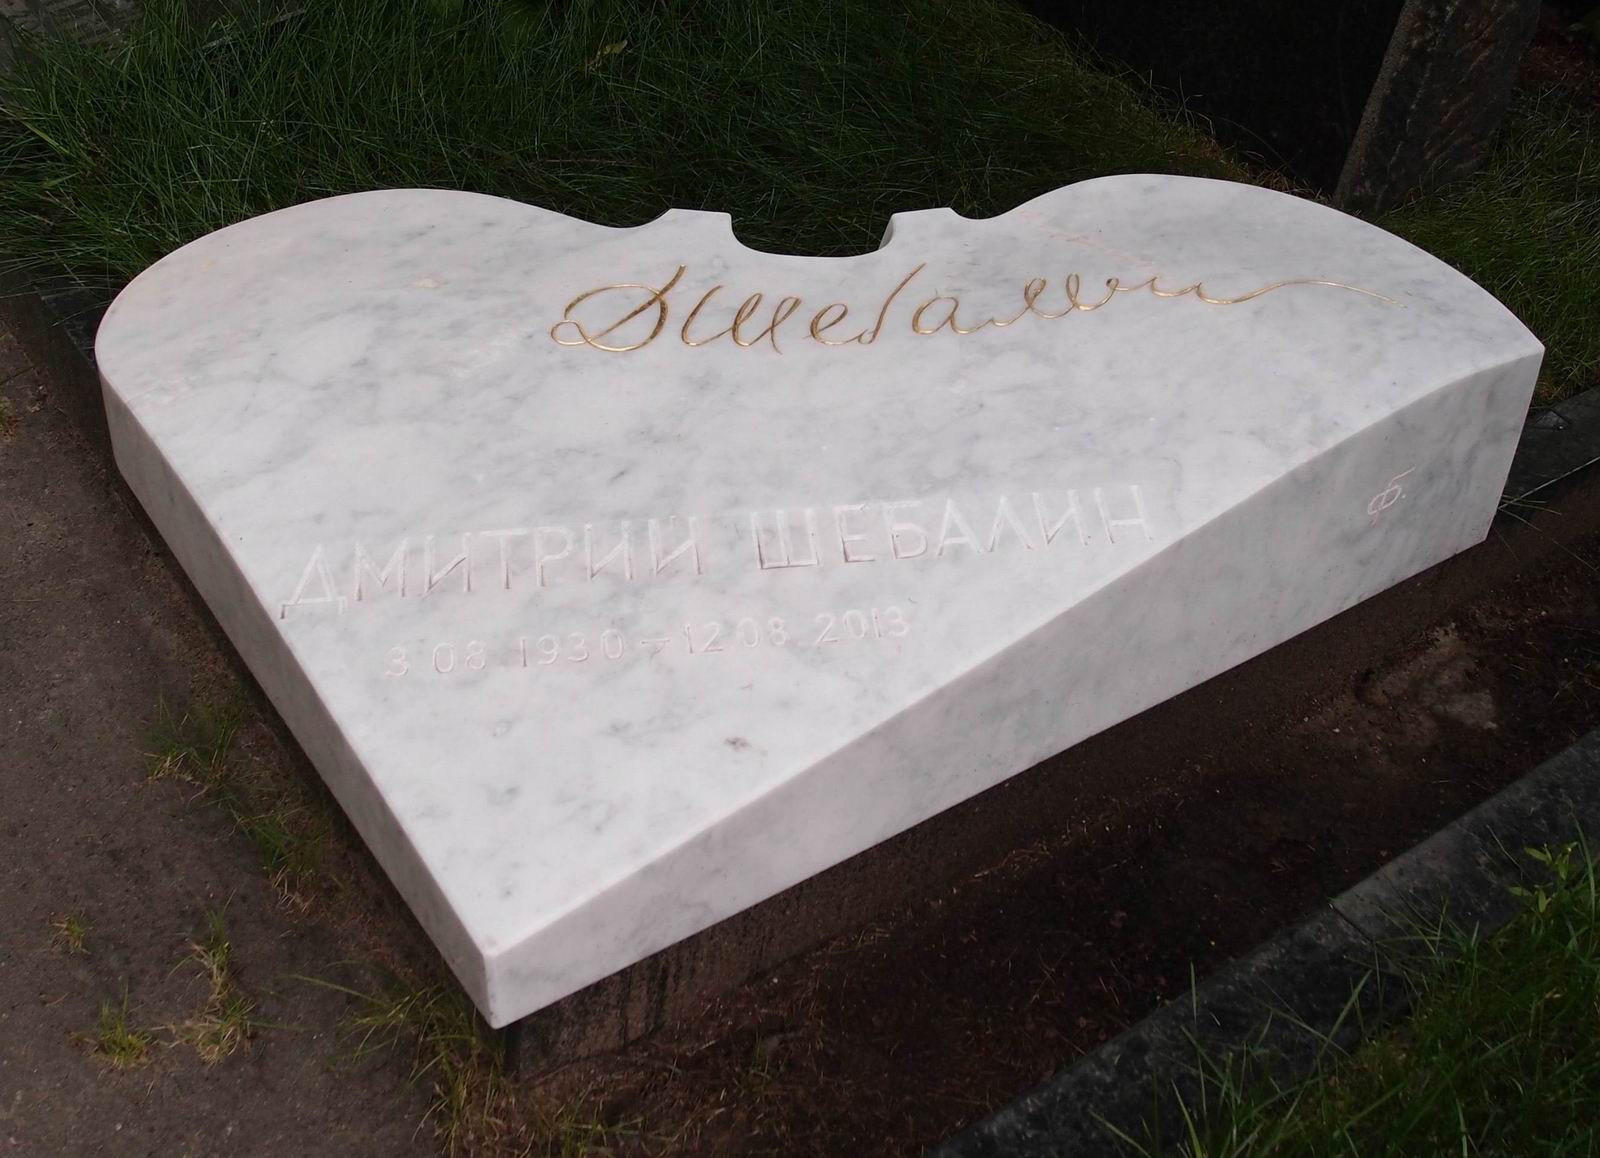 Памятник на могиле Шебалина Д.В. (1930–2013), ск. Г.Франгулян, на Новодевичьем кладбище (8–29–8).